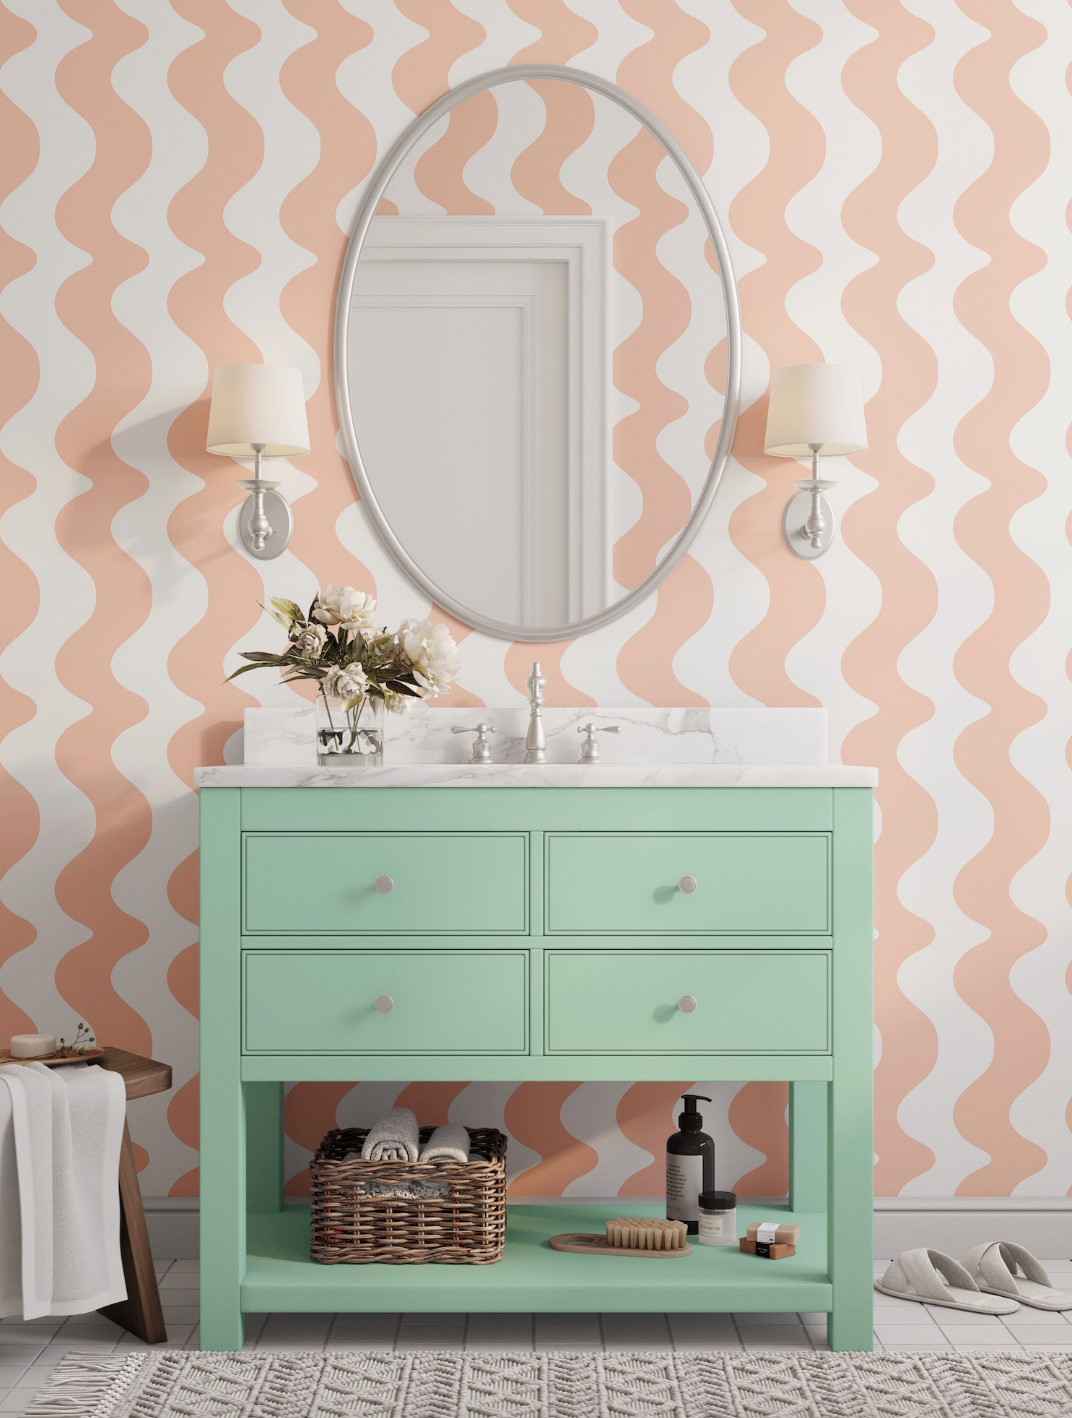 mueble de baño en verde turquesa con papel pintado en forma de ondas blancas y naranjas y espejo ovalado